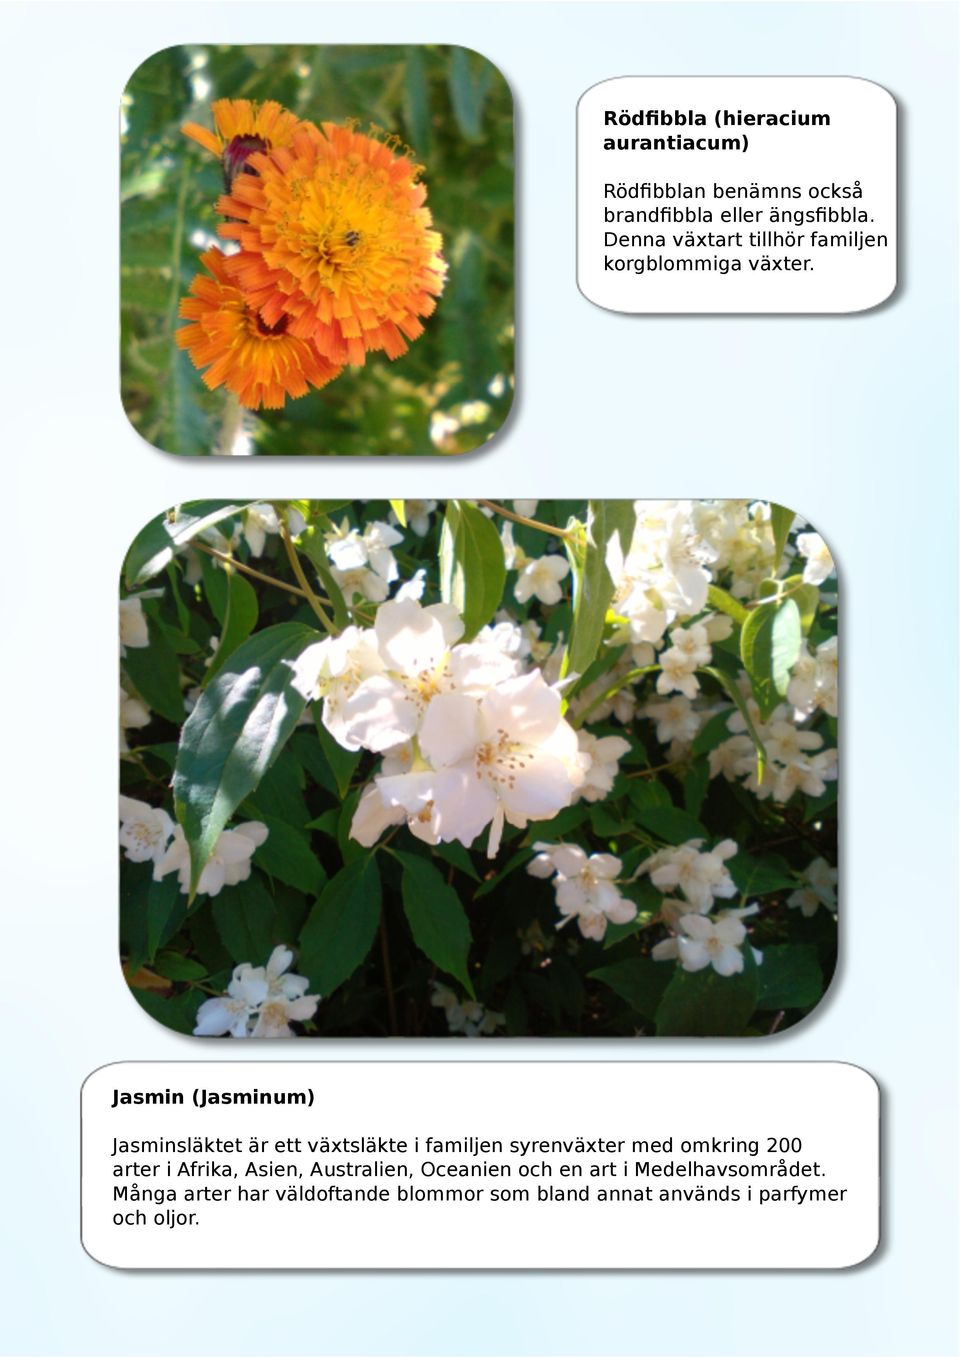 Jasmin (Jasminum) Jasminsläktet är ett växtsläkte i familjen syrenväxter med omkring 200 arter